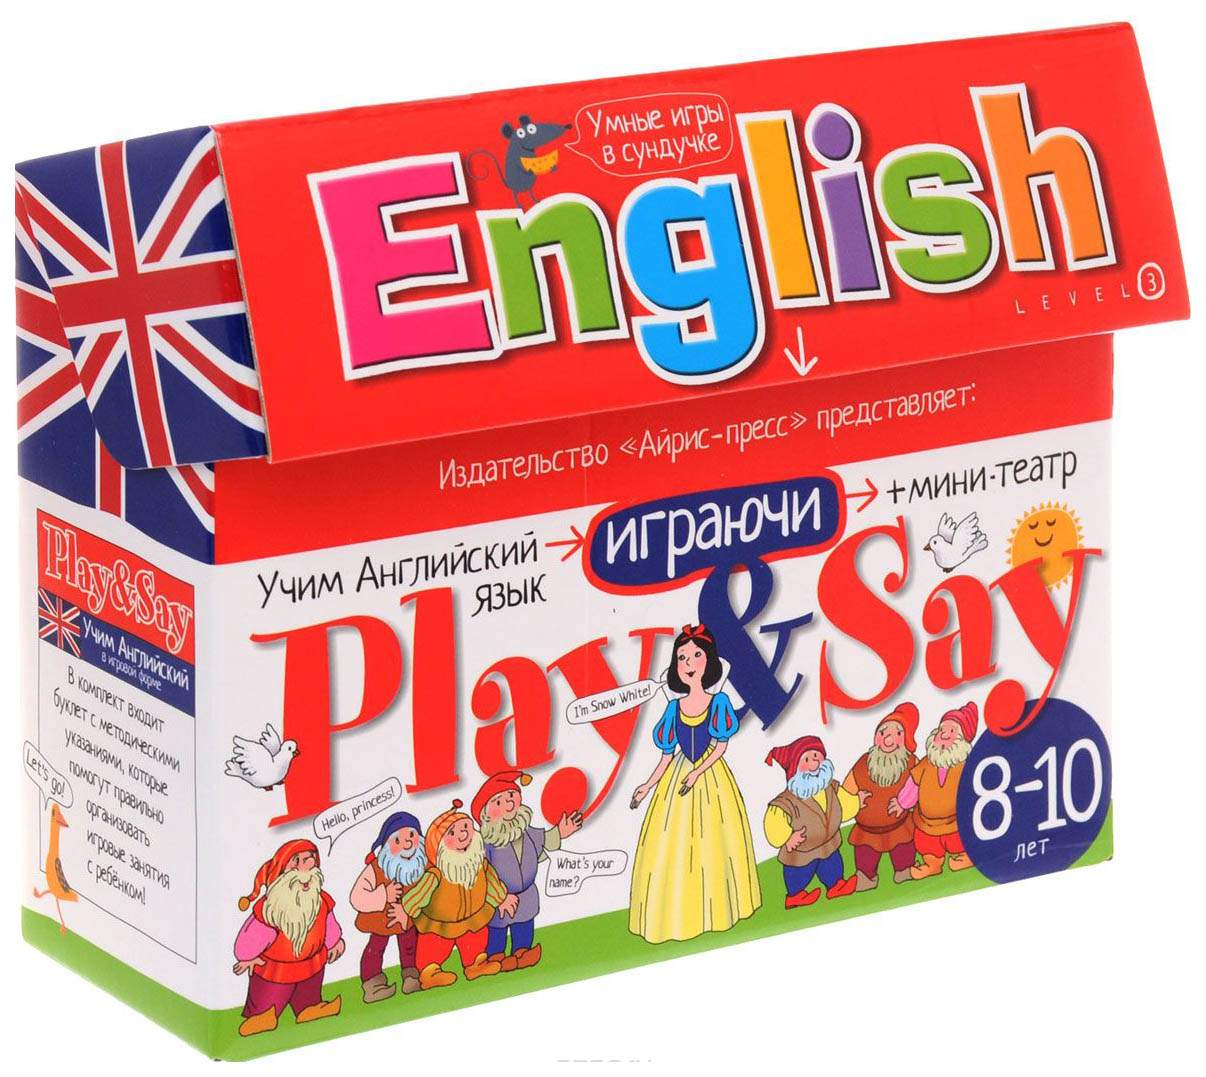 Your game english. Игрушки для изучения английского языка. Игрушки для изучения английского языка для детей. Настольные игры для изучения английского языка. Развивающие игры на английском языке.